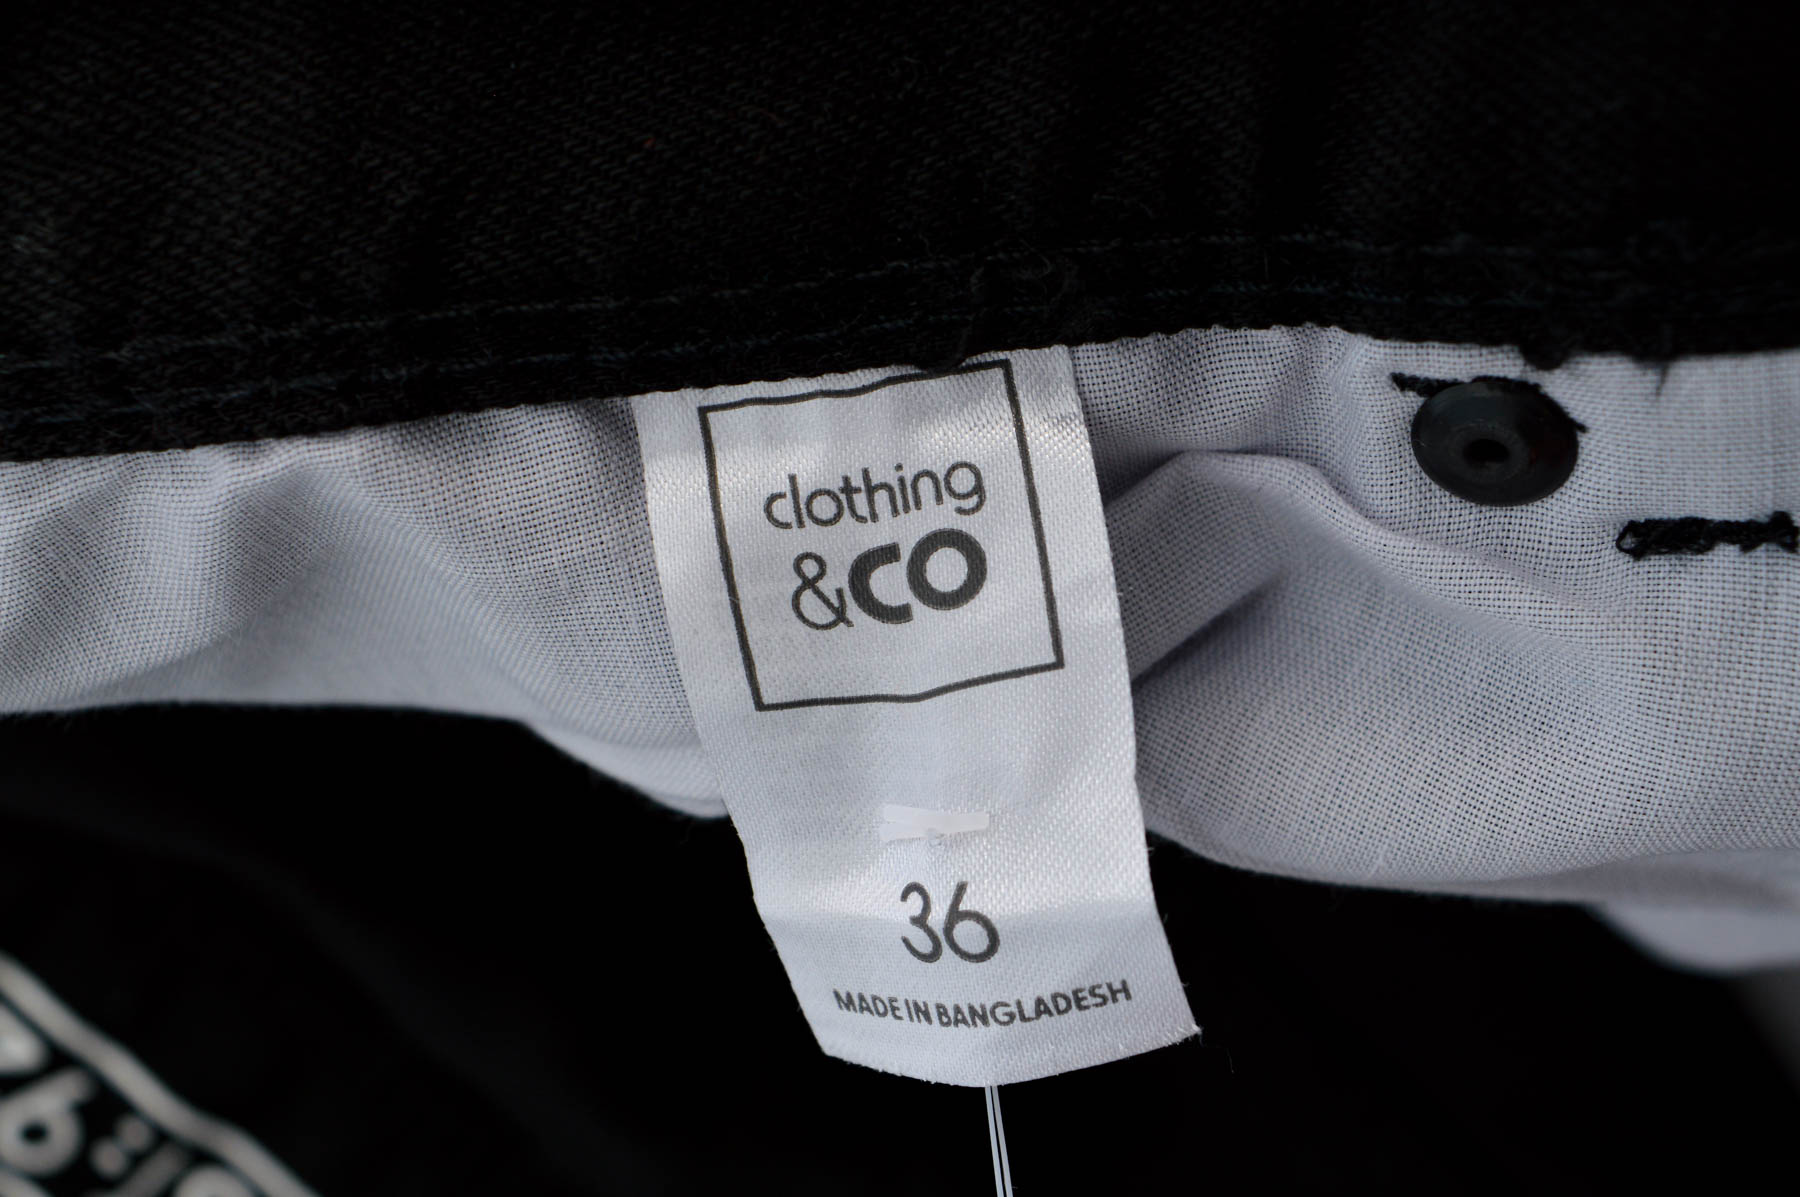 Jeans pentru bărbăți - Clothing & CO - 2